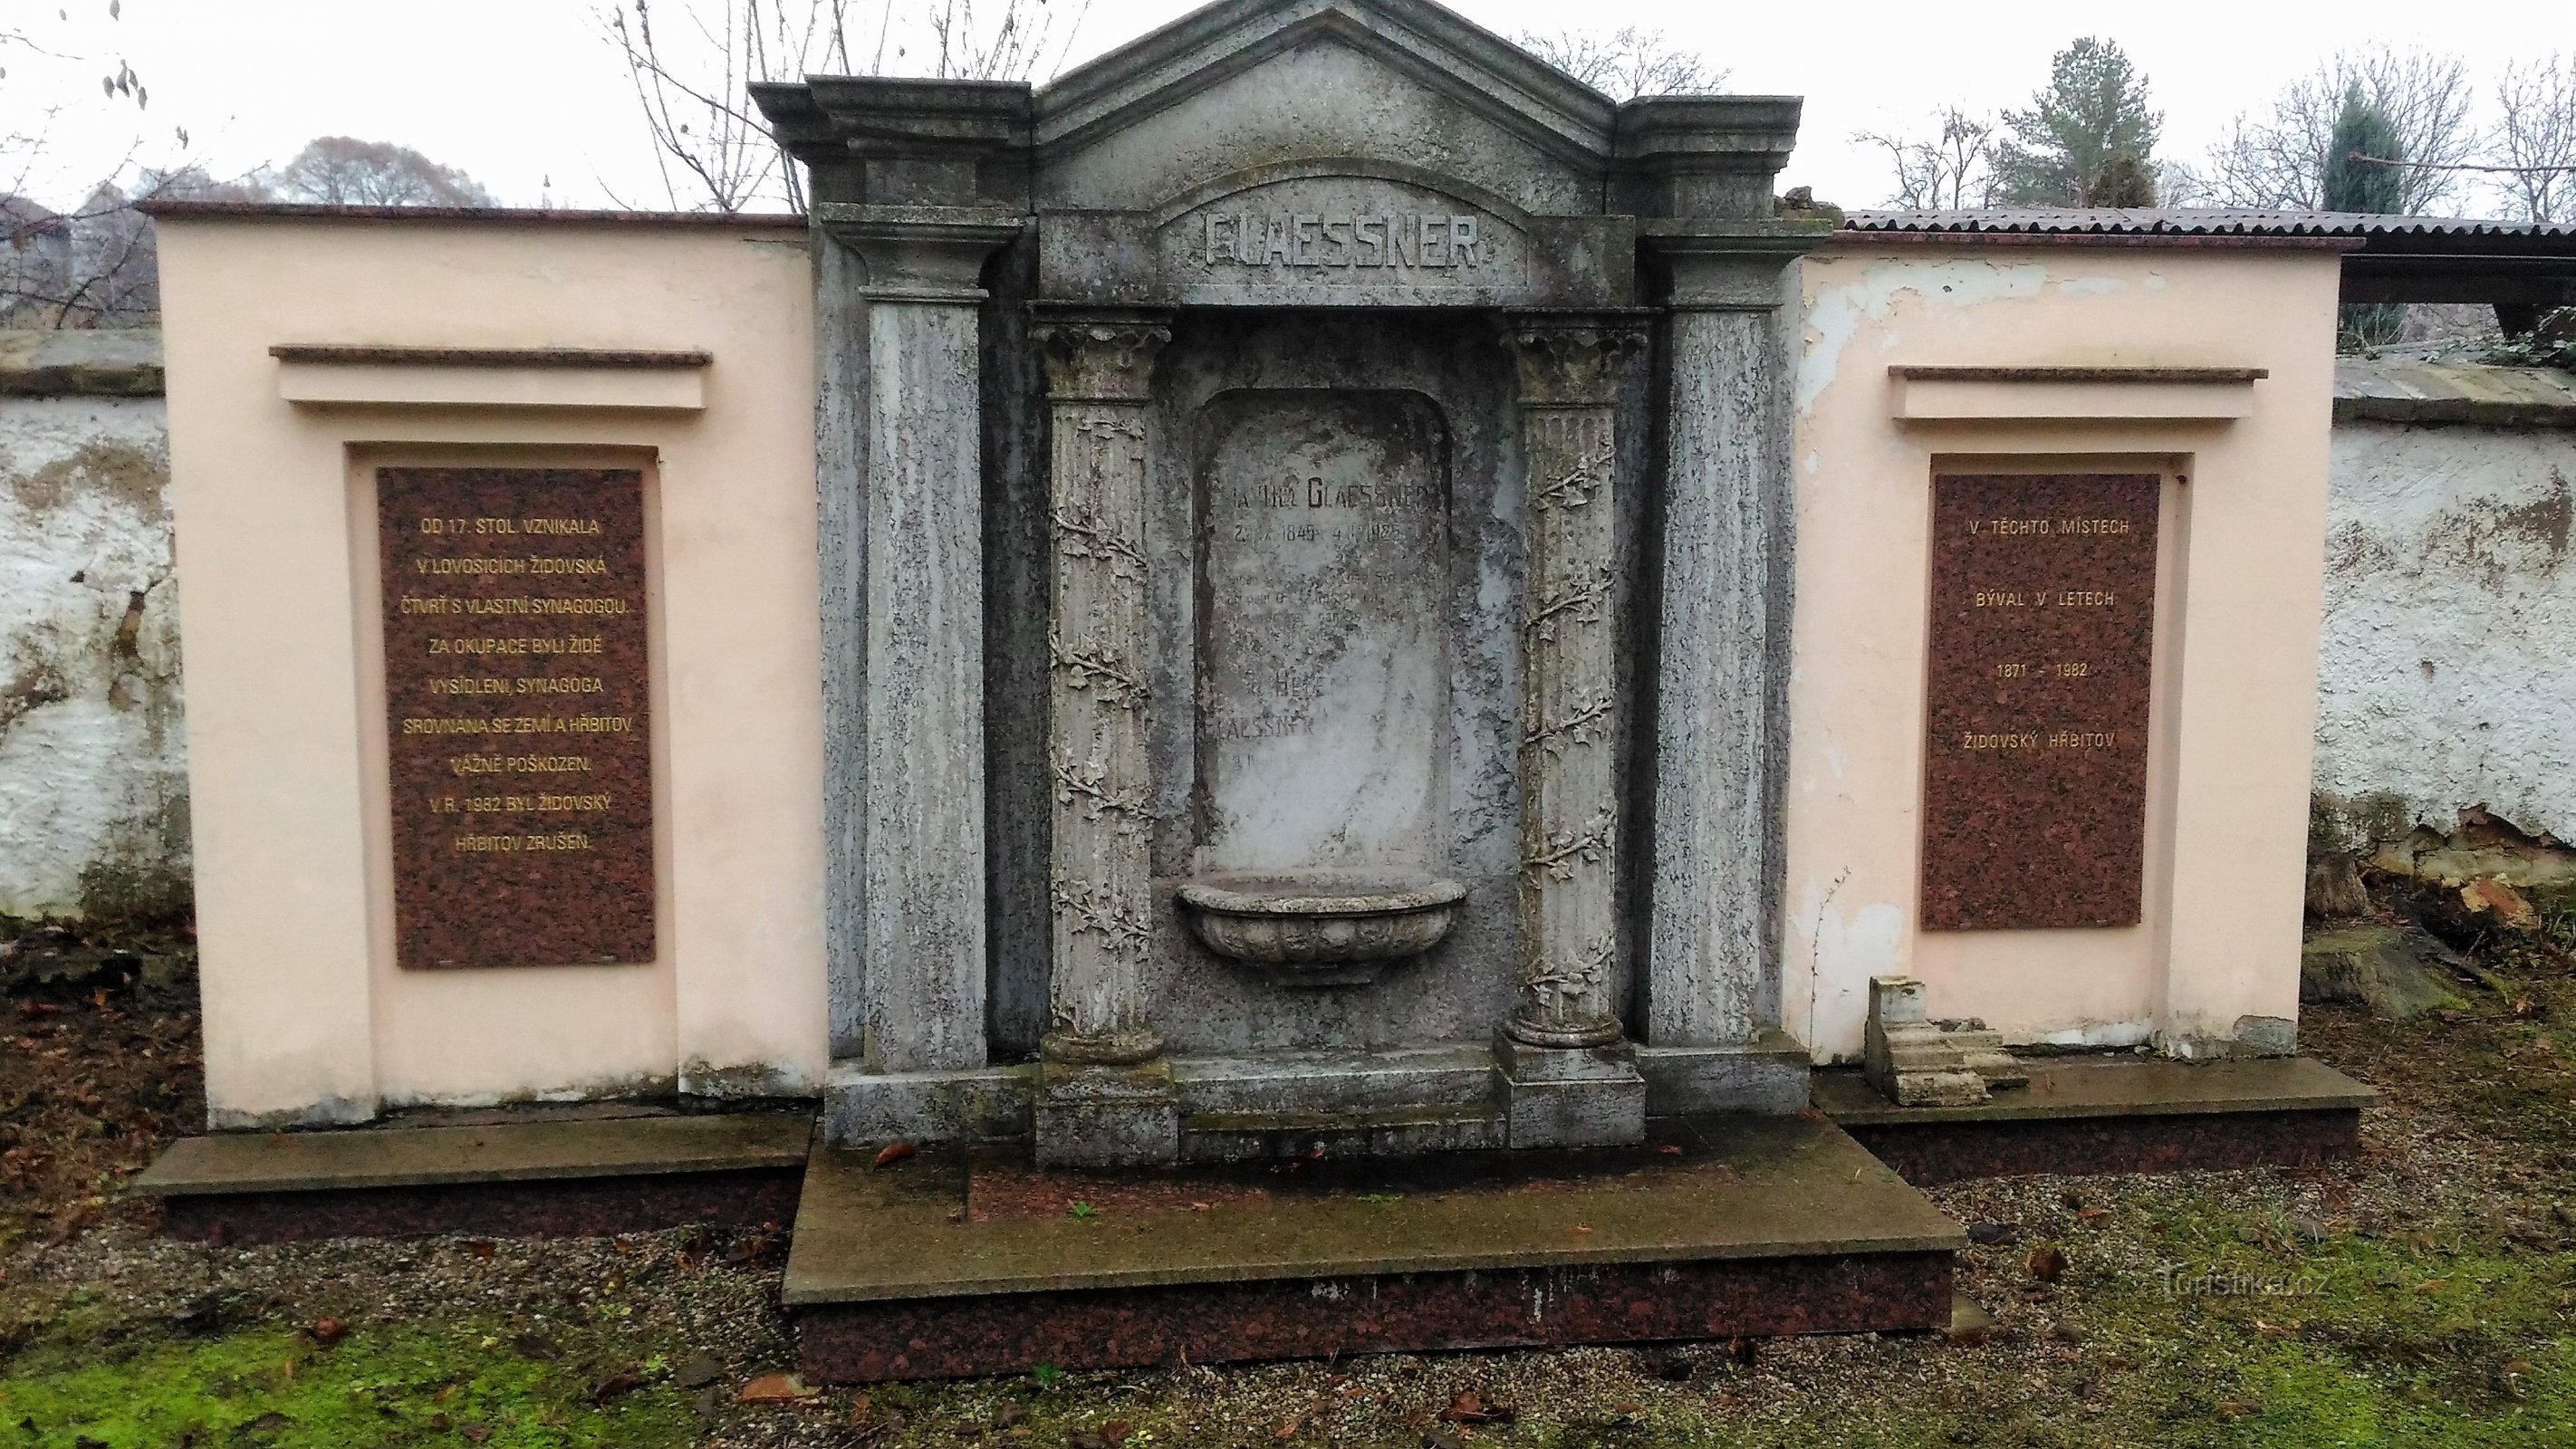 Cimitirul evreiesc din Lovosice.